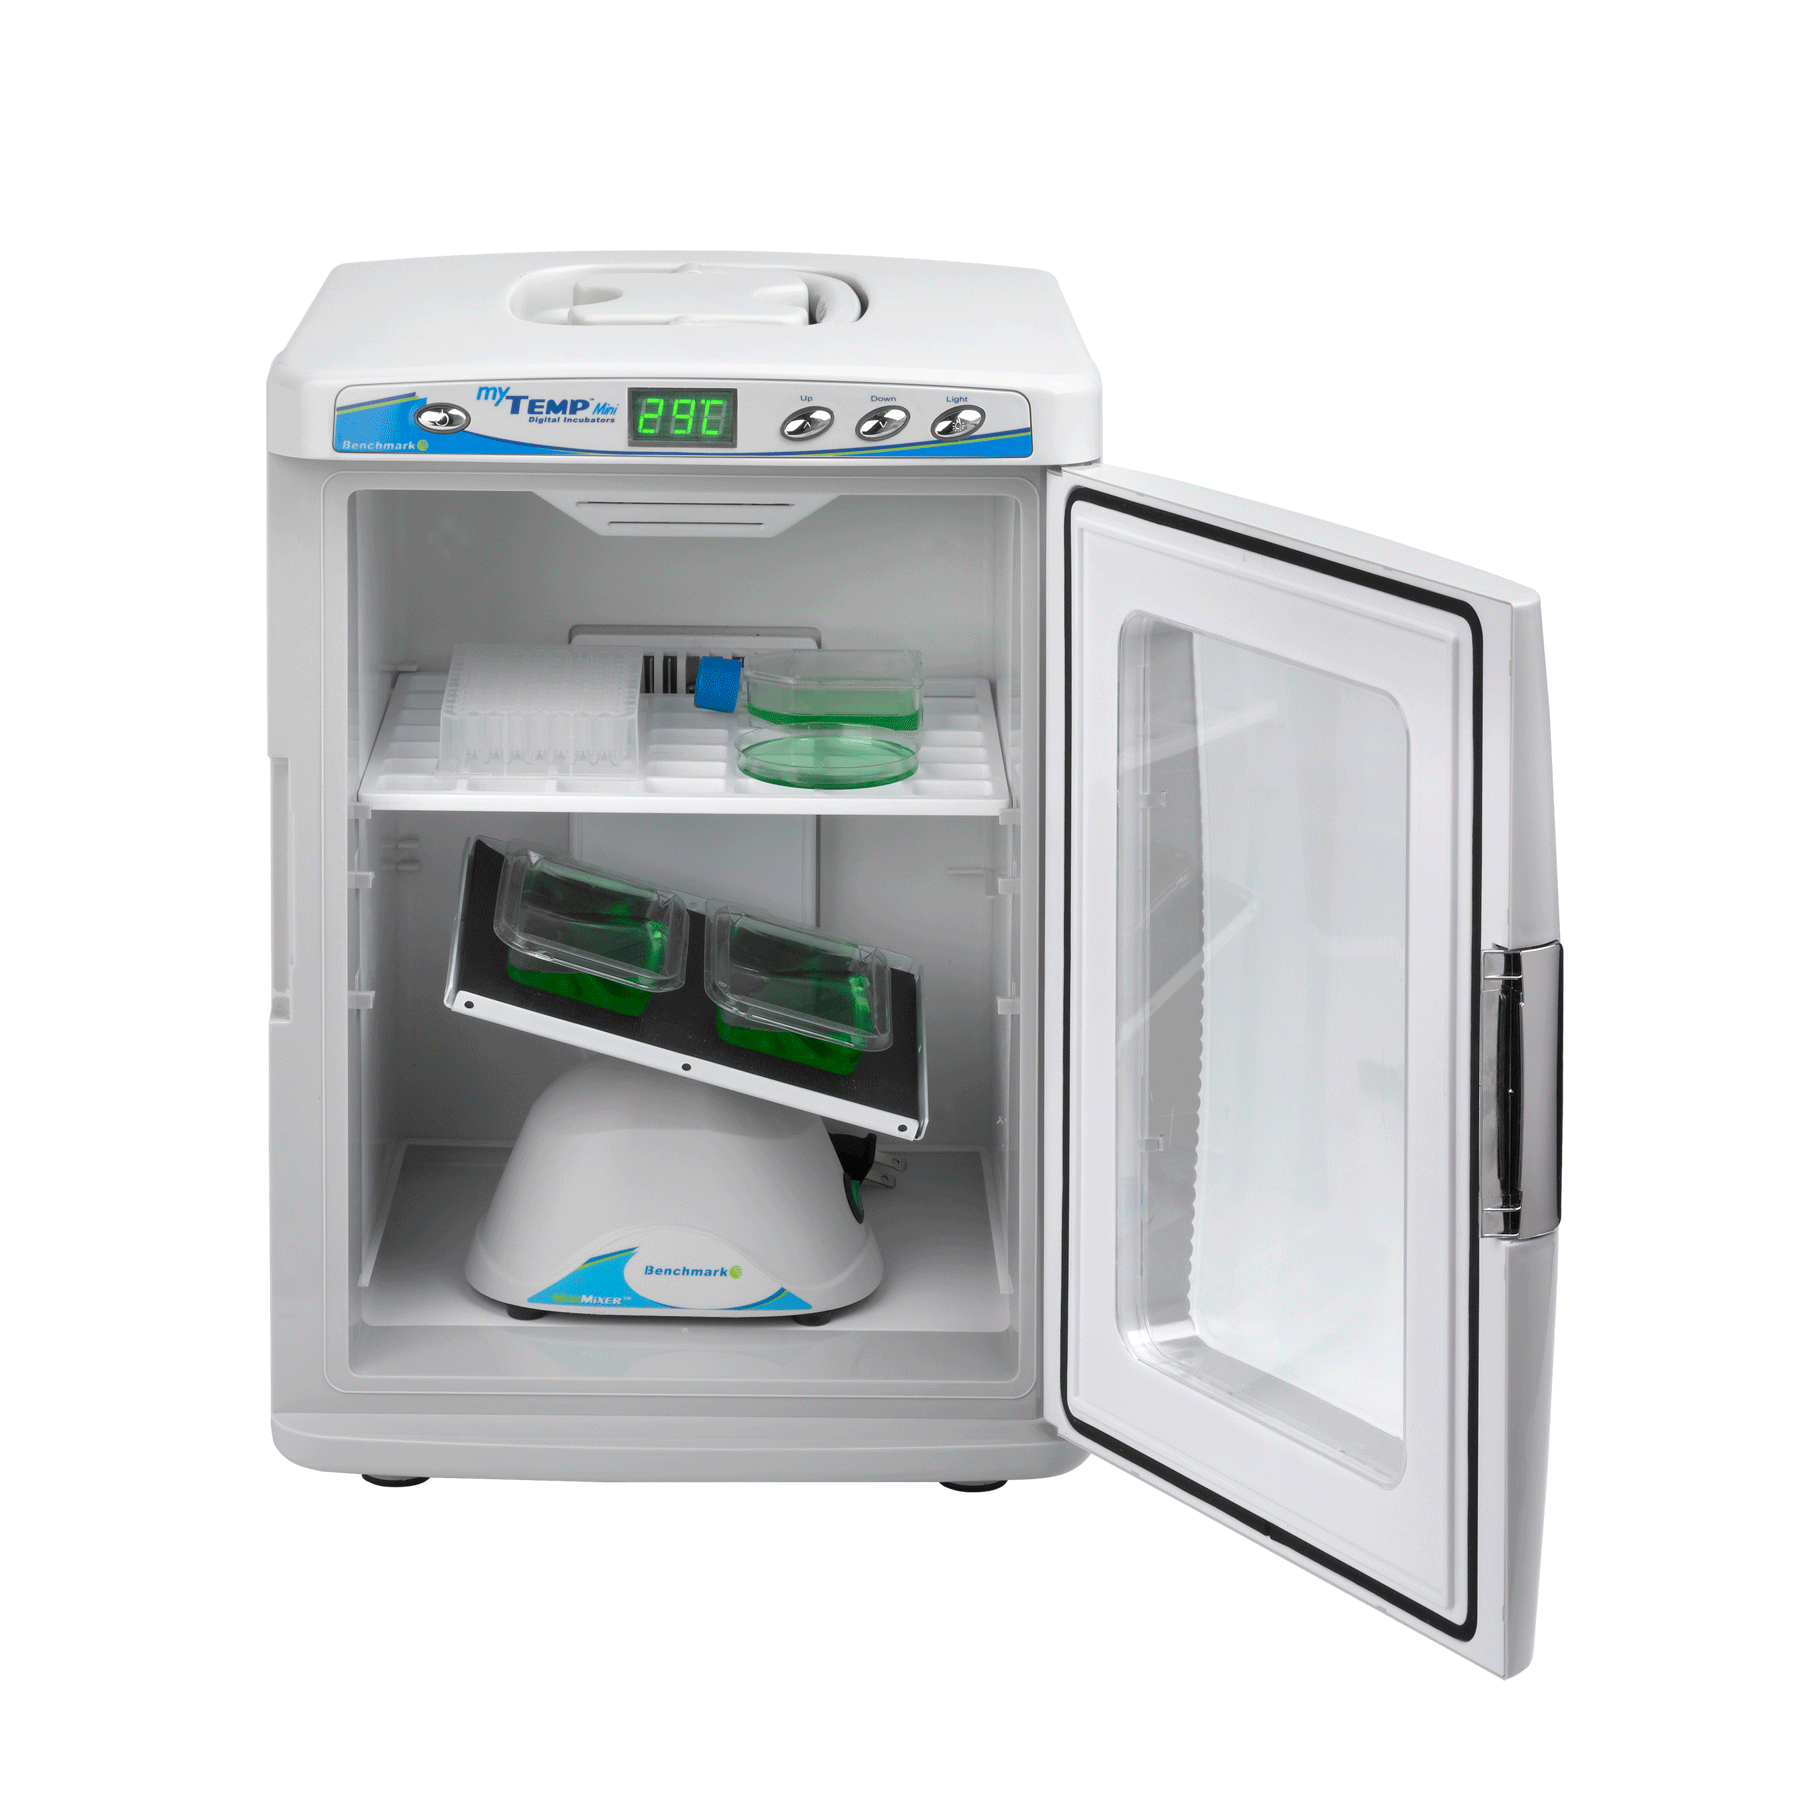 Tủ ấm mini MYTEMP H2200-H-E của hãng Benchmark Scientific